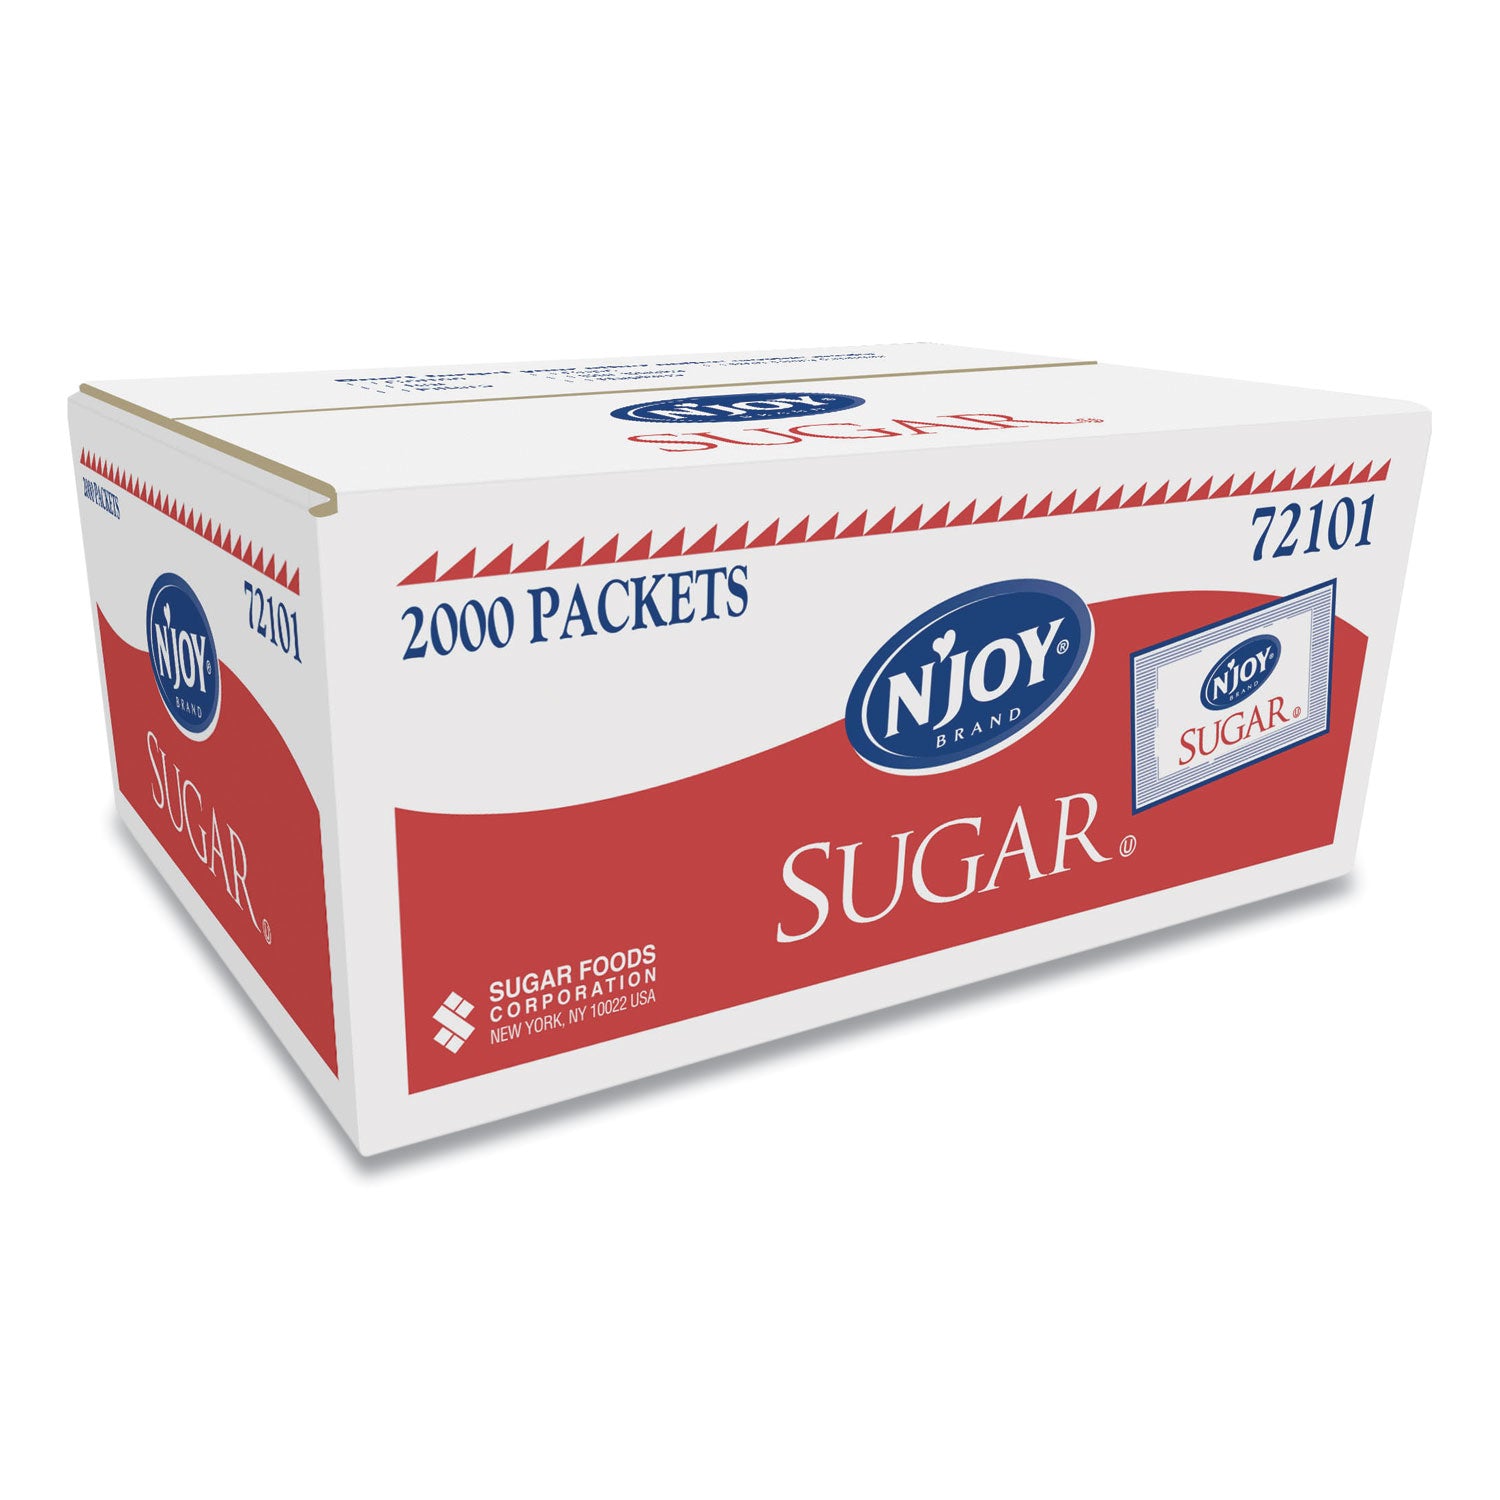 sugar-packets-01-oz-2000-packets-box_njosug72101 - 2